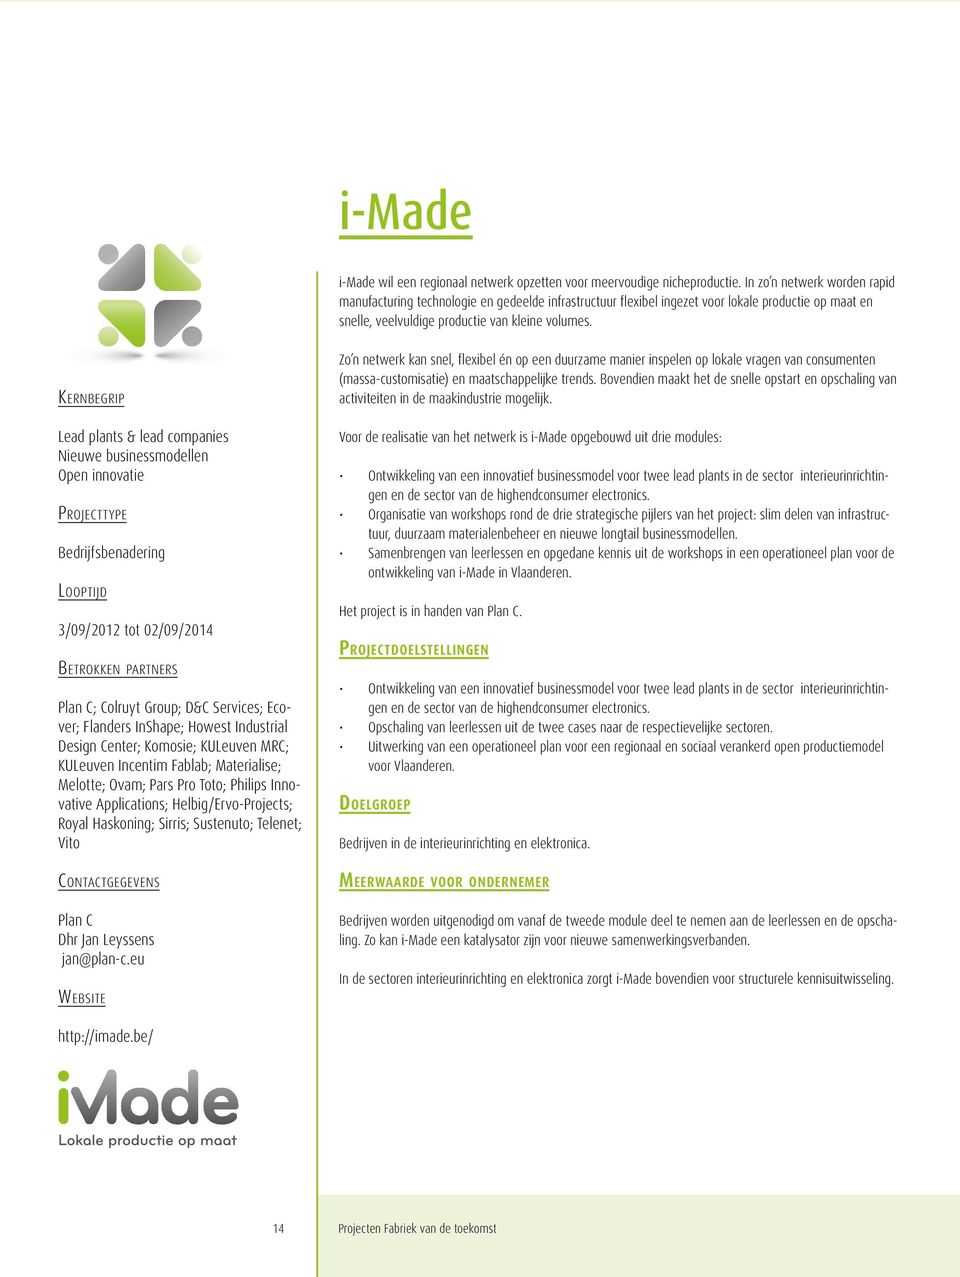 Lead plants & lead companies Nieuwe businessmodellen Open innovatie Bedrijfsbenadering 3/09/2012 tot 02/09/2014 Plan C; Colruyt Group; D&C Services; Ecover; Flanders InShape; Howest Industrial Design